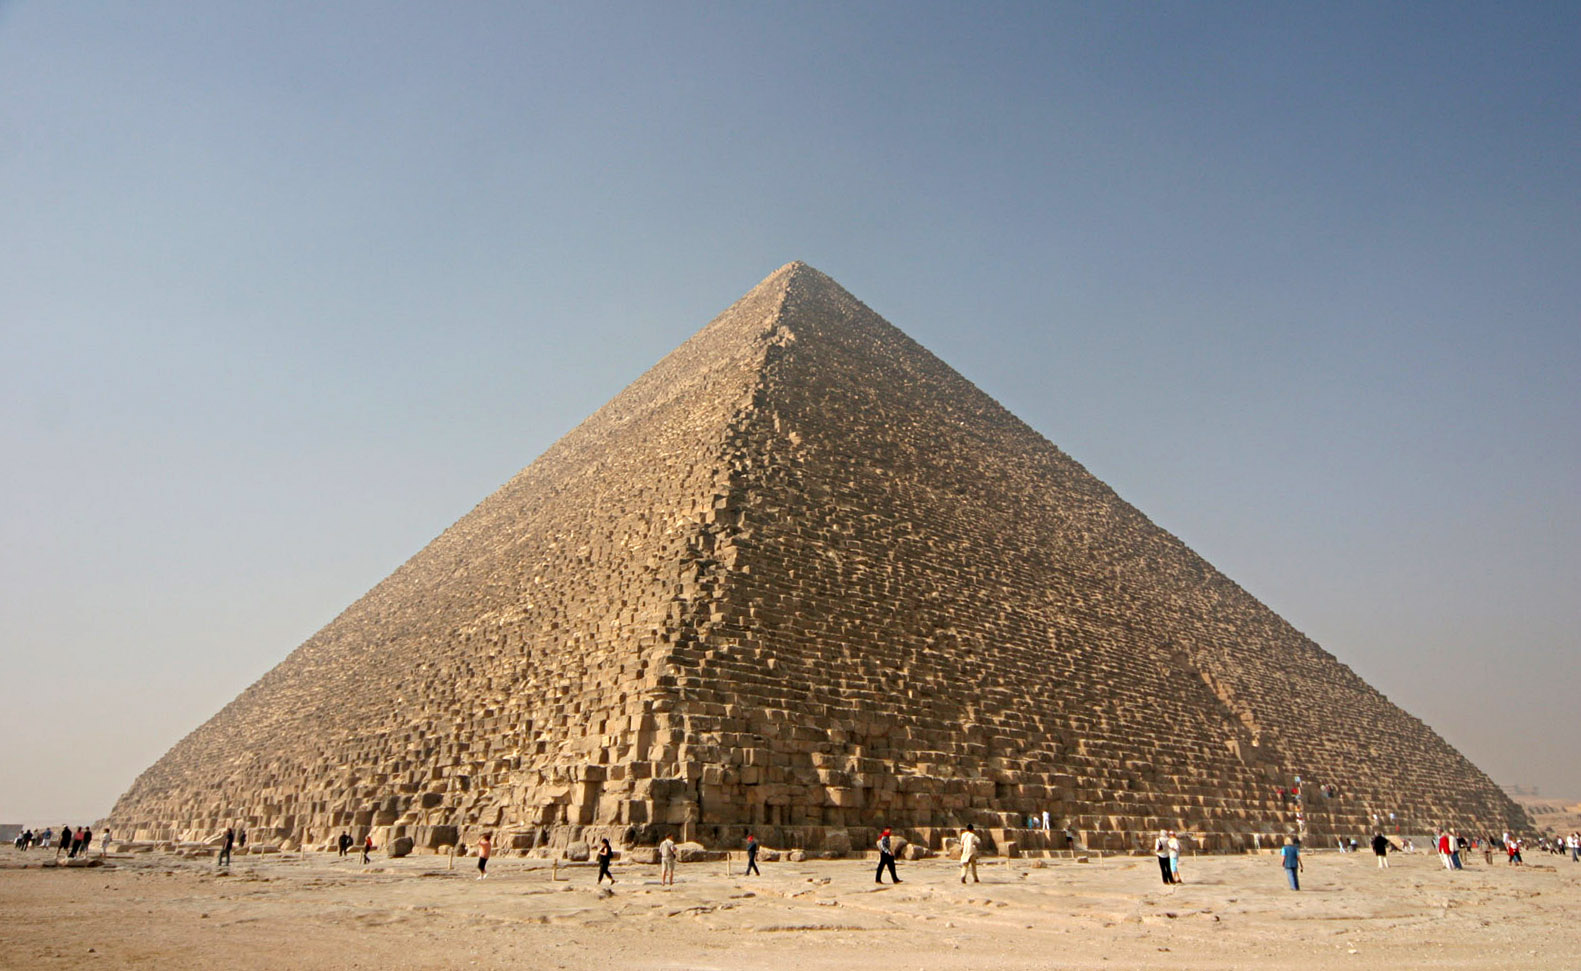 Cientistas detectam estrutura misteriosa debaixo da pirâmide de Gizé